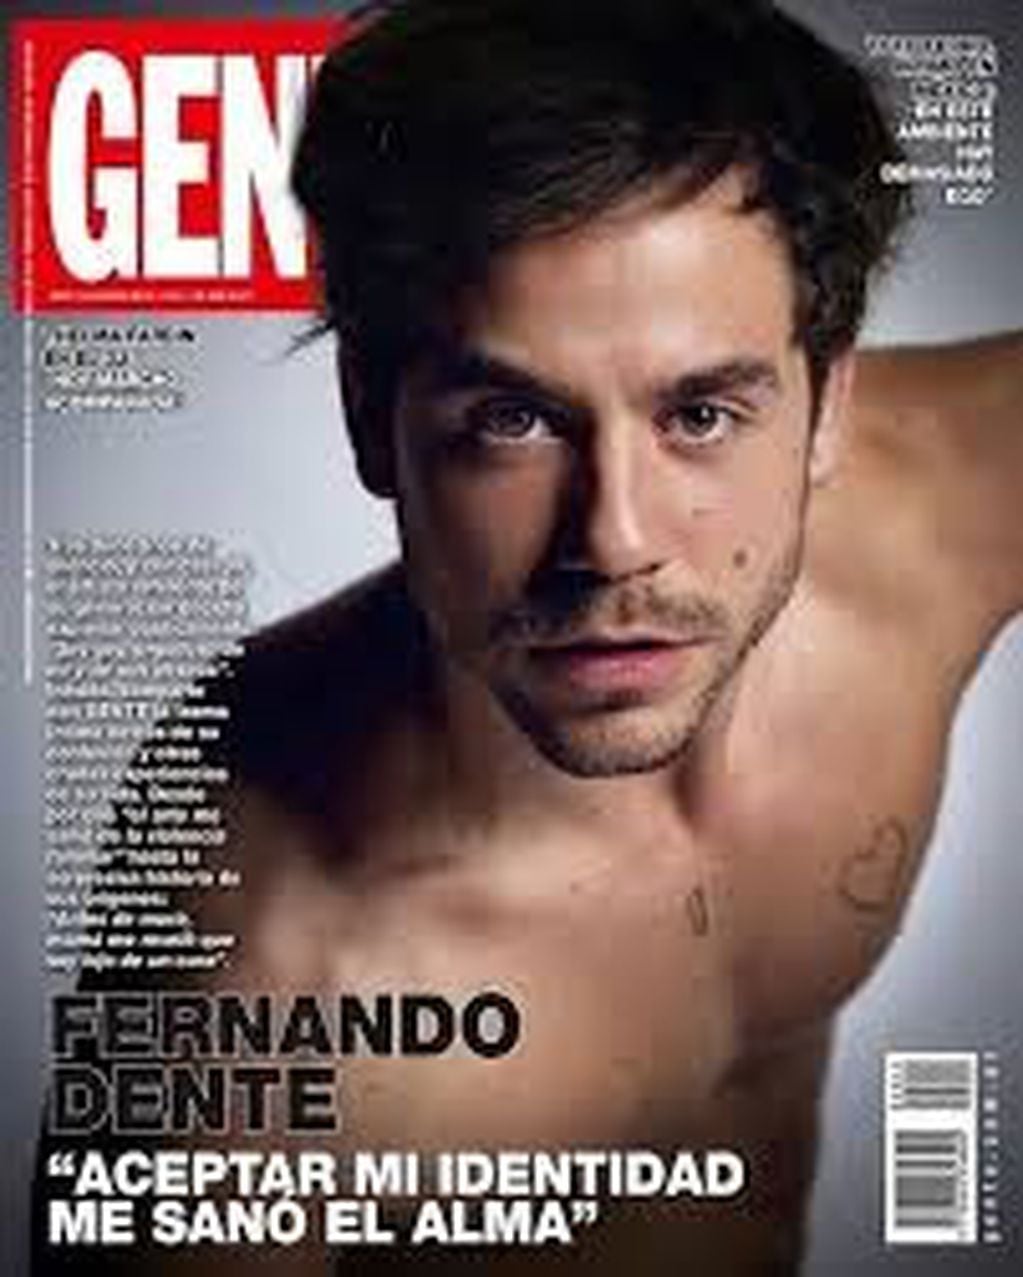 La tapa de la última edición de revista Gente tiene a Fernando Dente como protagonista